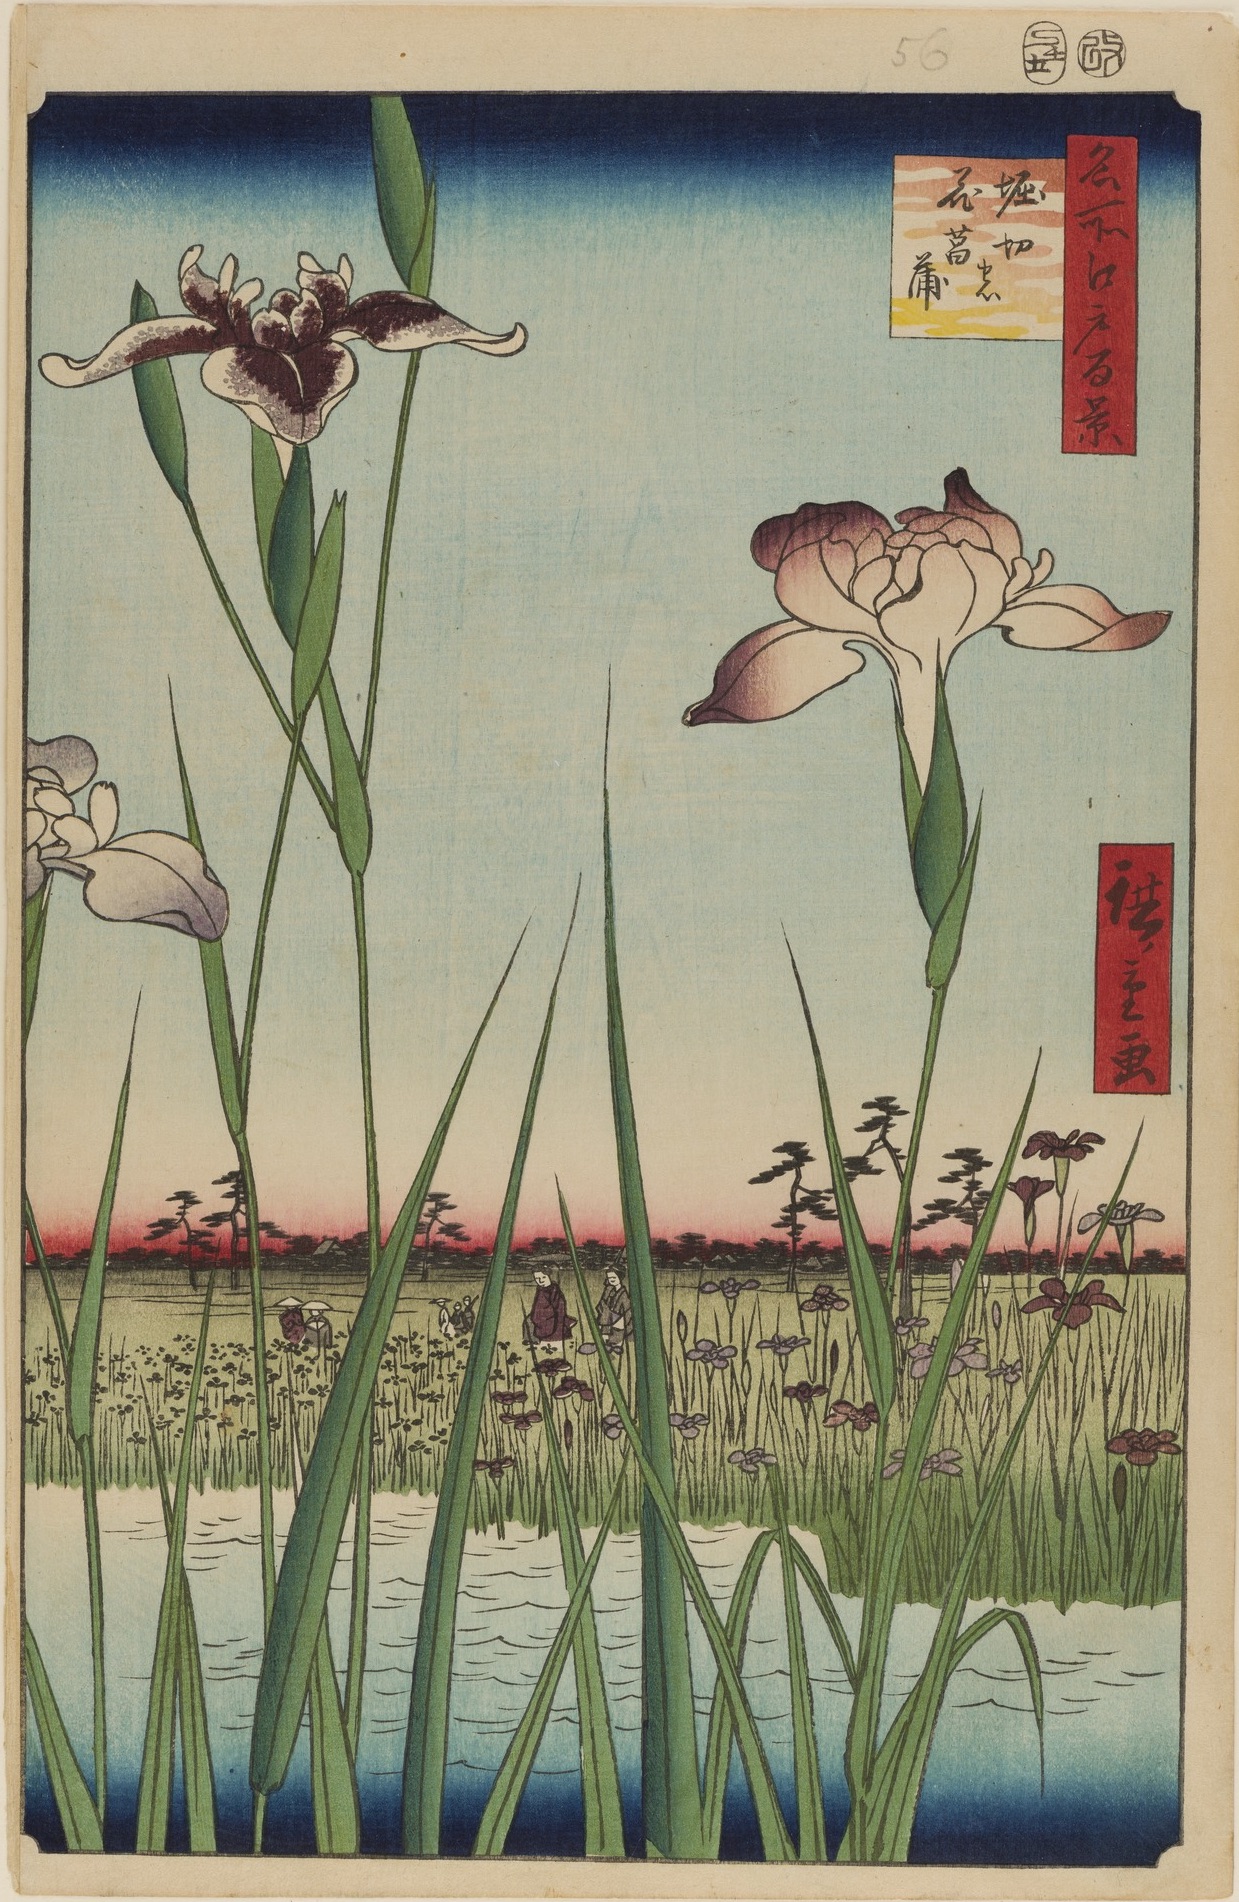 호리키리 마을의 아이리스 정원 by  Hiroshige - 1856년 - 34 x 22.9 cm 